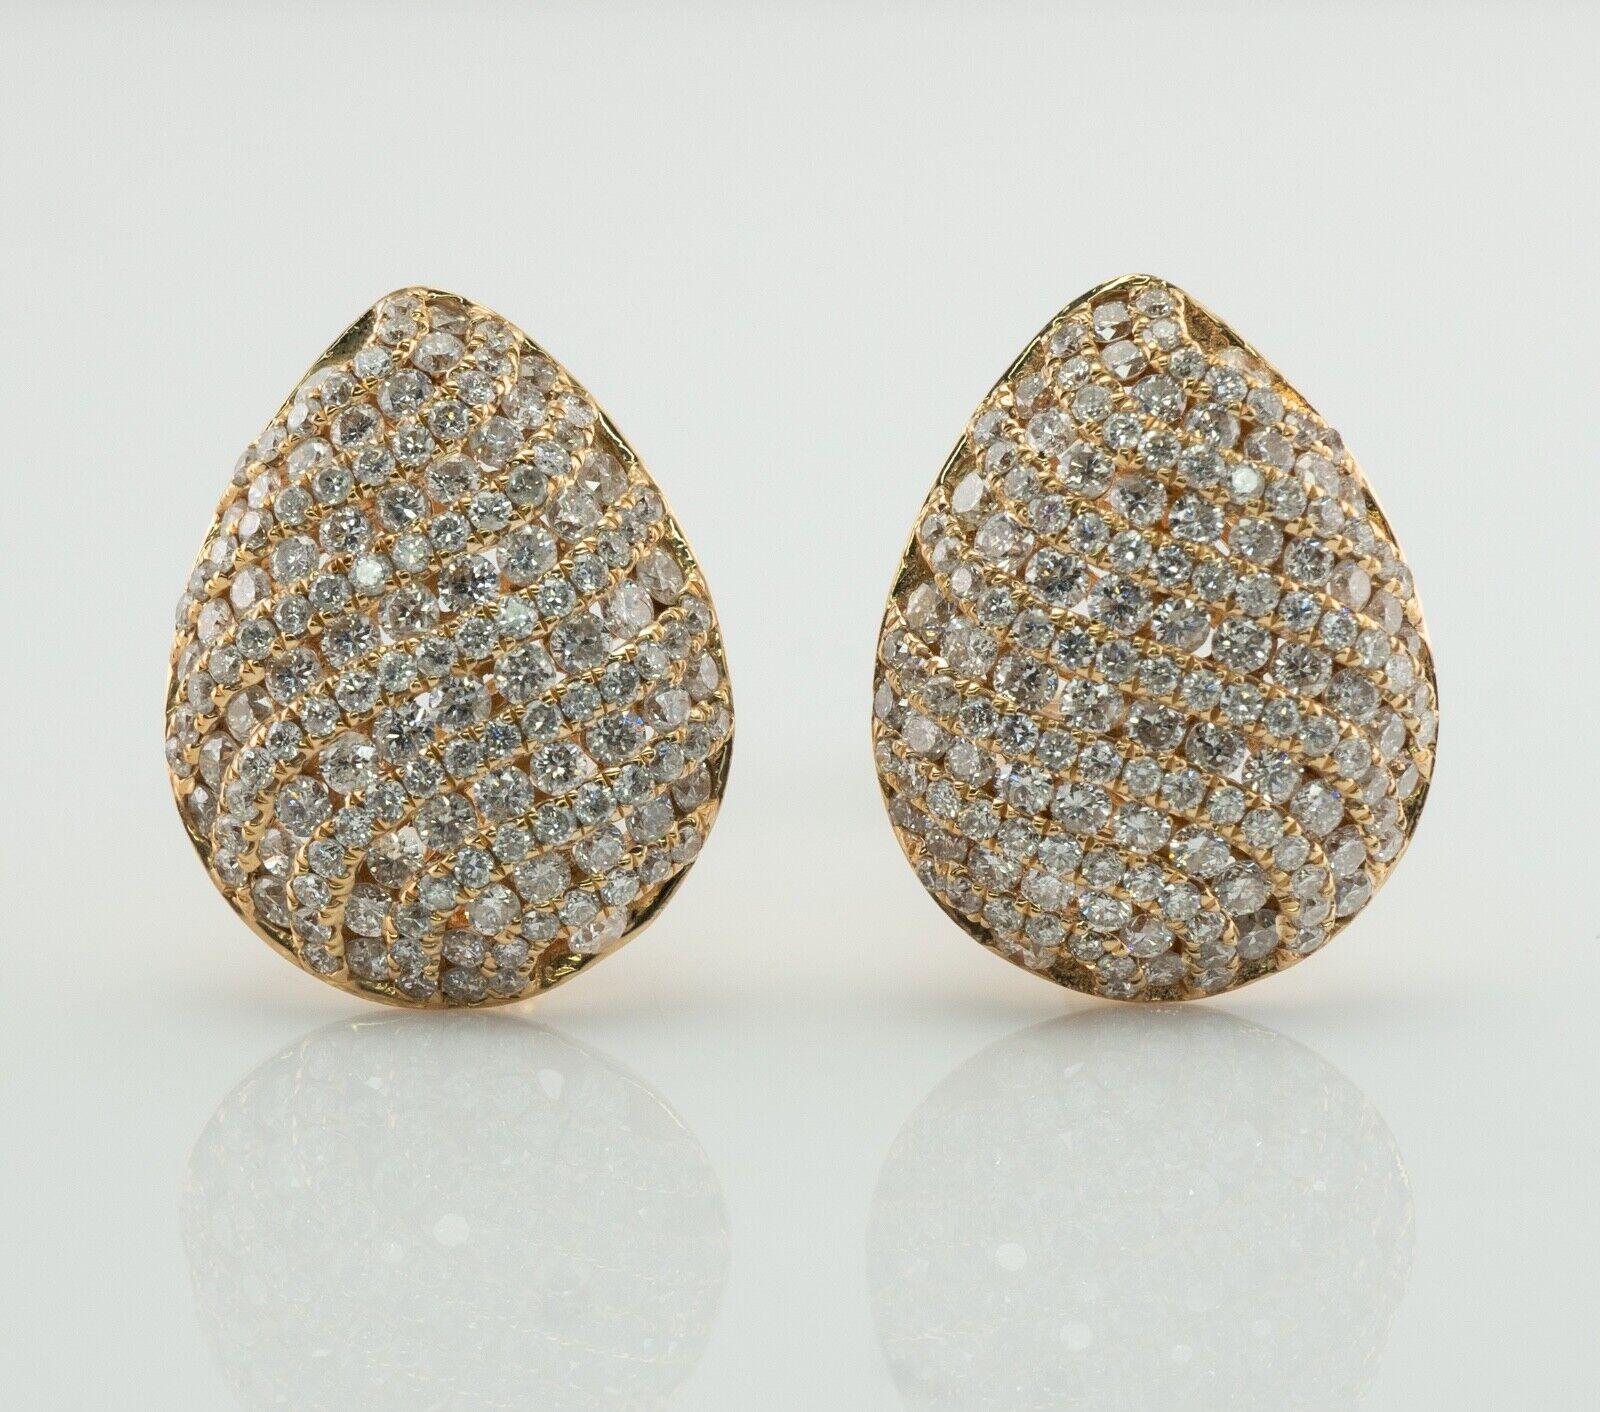 Diese Diamant-Ohrringe sind aus massivem 14K Gelbgold gefertigt.
Jeder Ohrring ist mit 137 Diamanten im Rundschliff besetzt.
Das Gesamtgewicht der Diamanten für das Paar beträgt 4,11 Karat.
Die Diamanten sind SI1 Klarheit und H Farbe.
Jeder